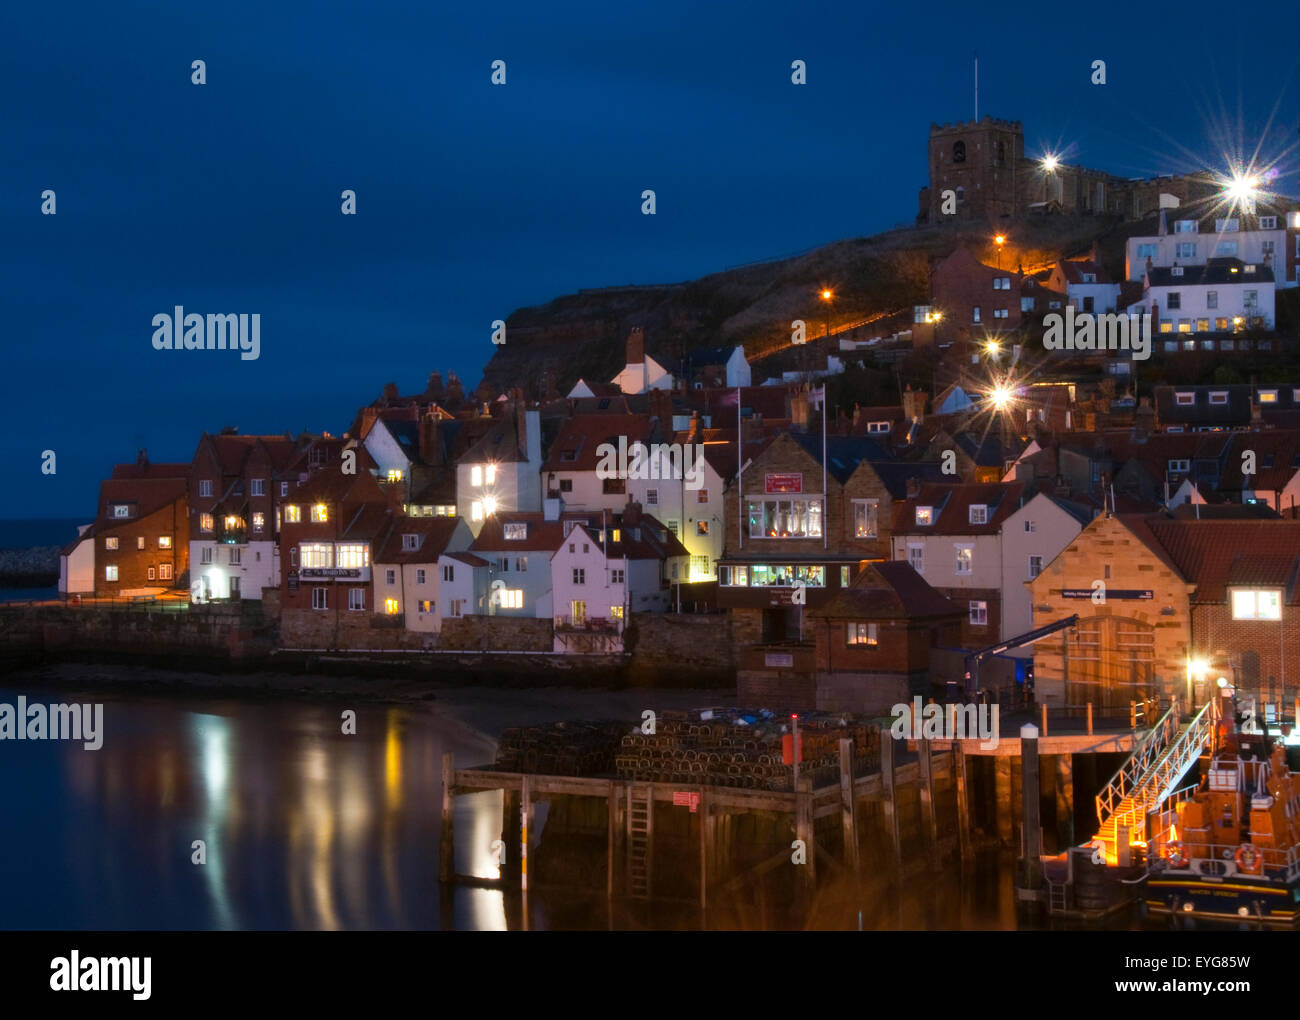 Heure de nuit en bleu dans le port de Whitby, North Yorkshire Angleterre UK Banque D'Images